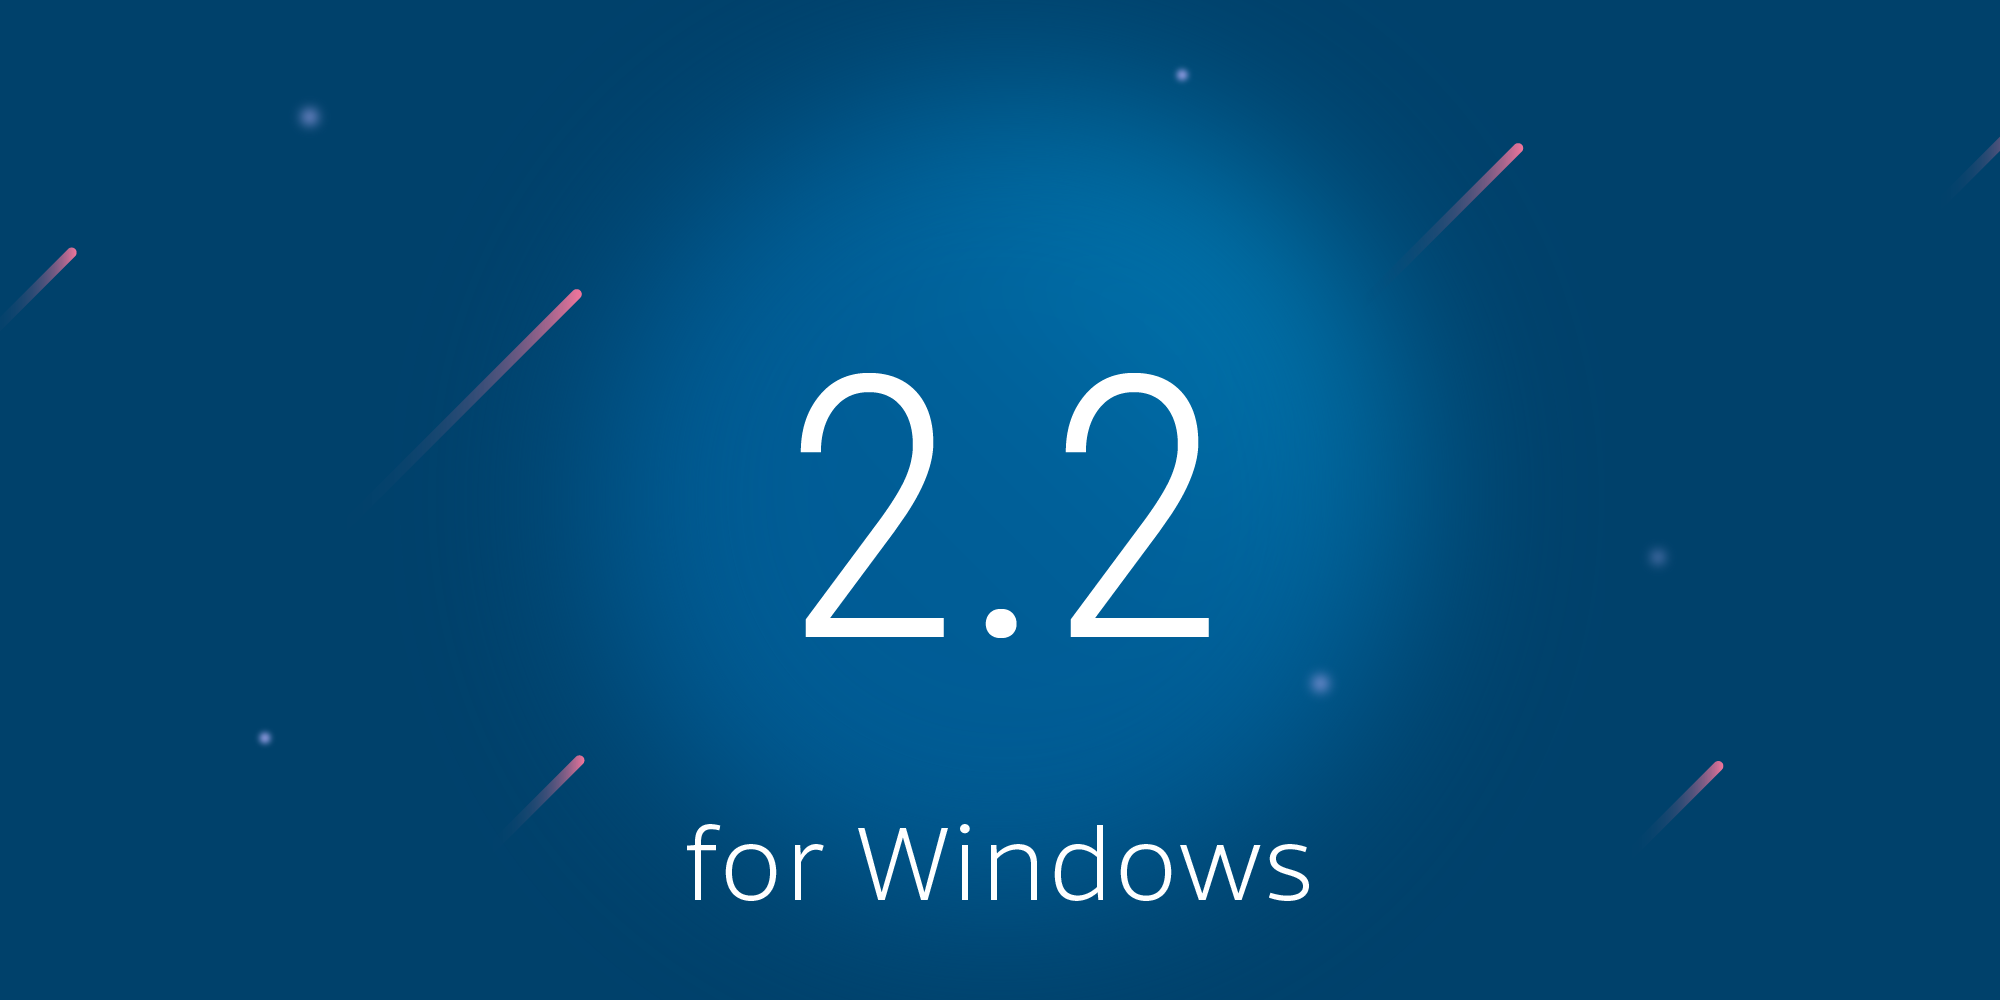 Illustration: PSPDFKit 2.2 for Windows